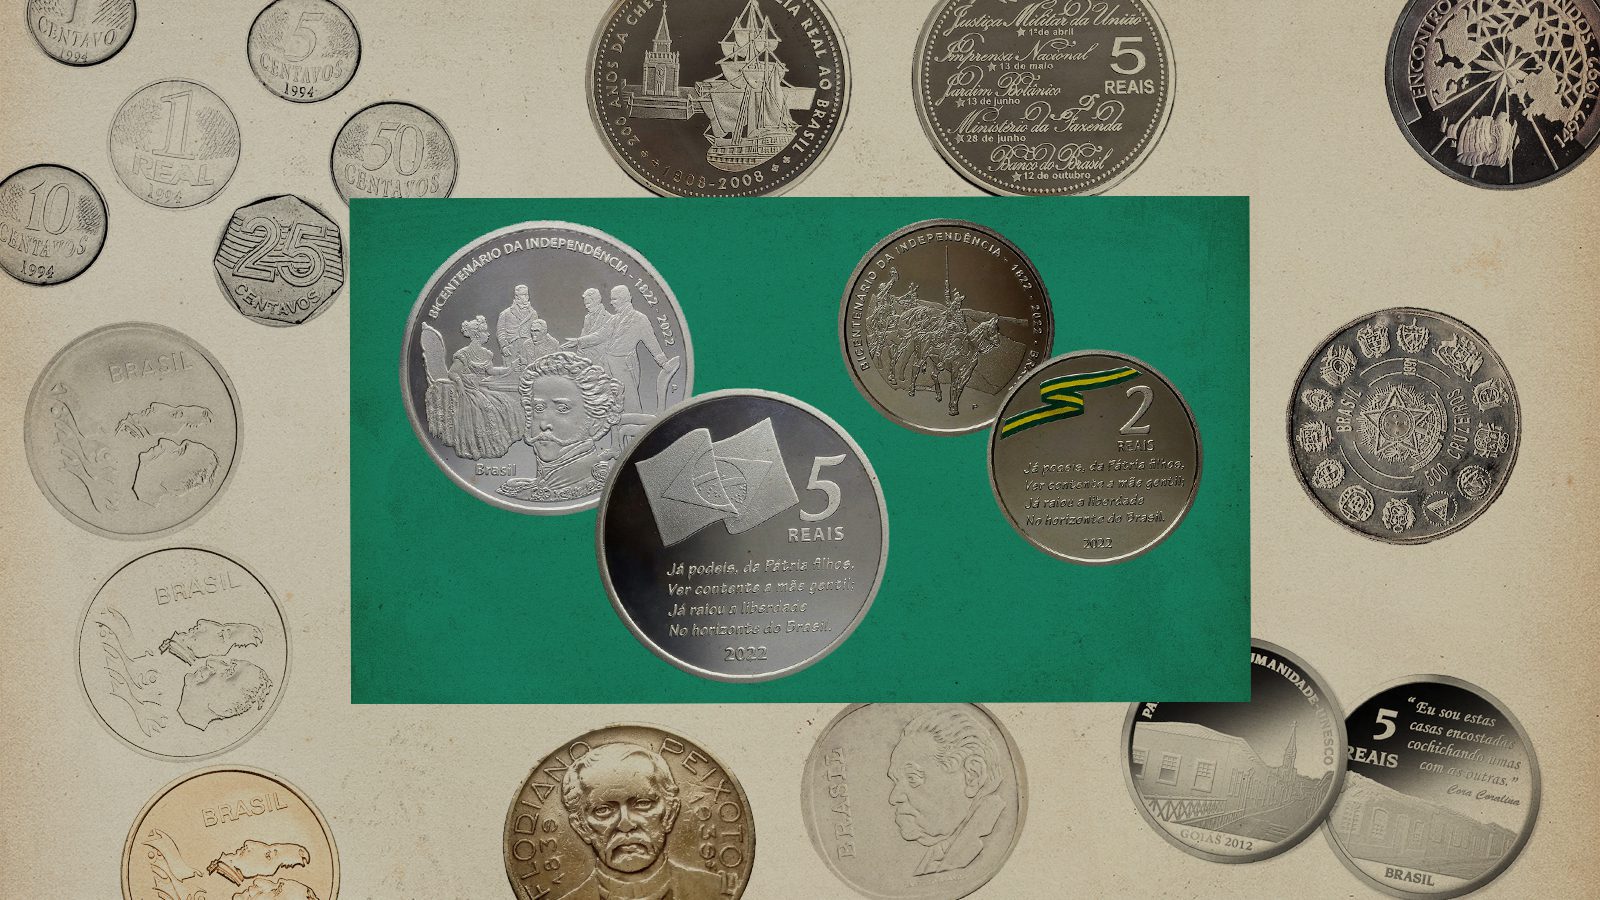 Imagem com algumas das moedas comemorativas mais feias do Brasil